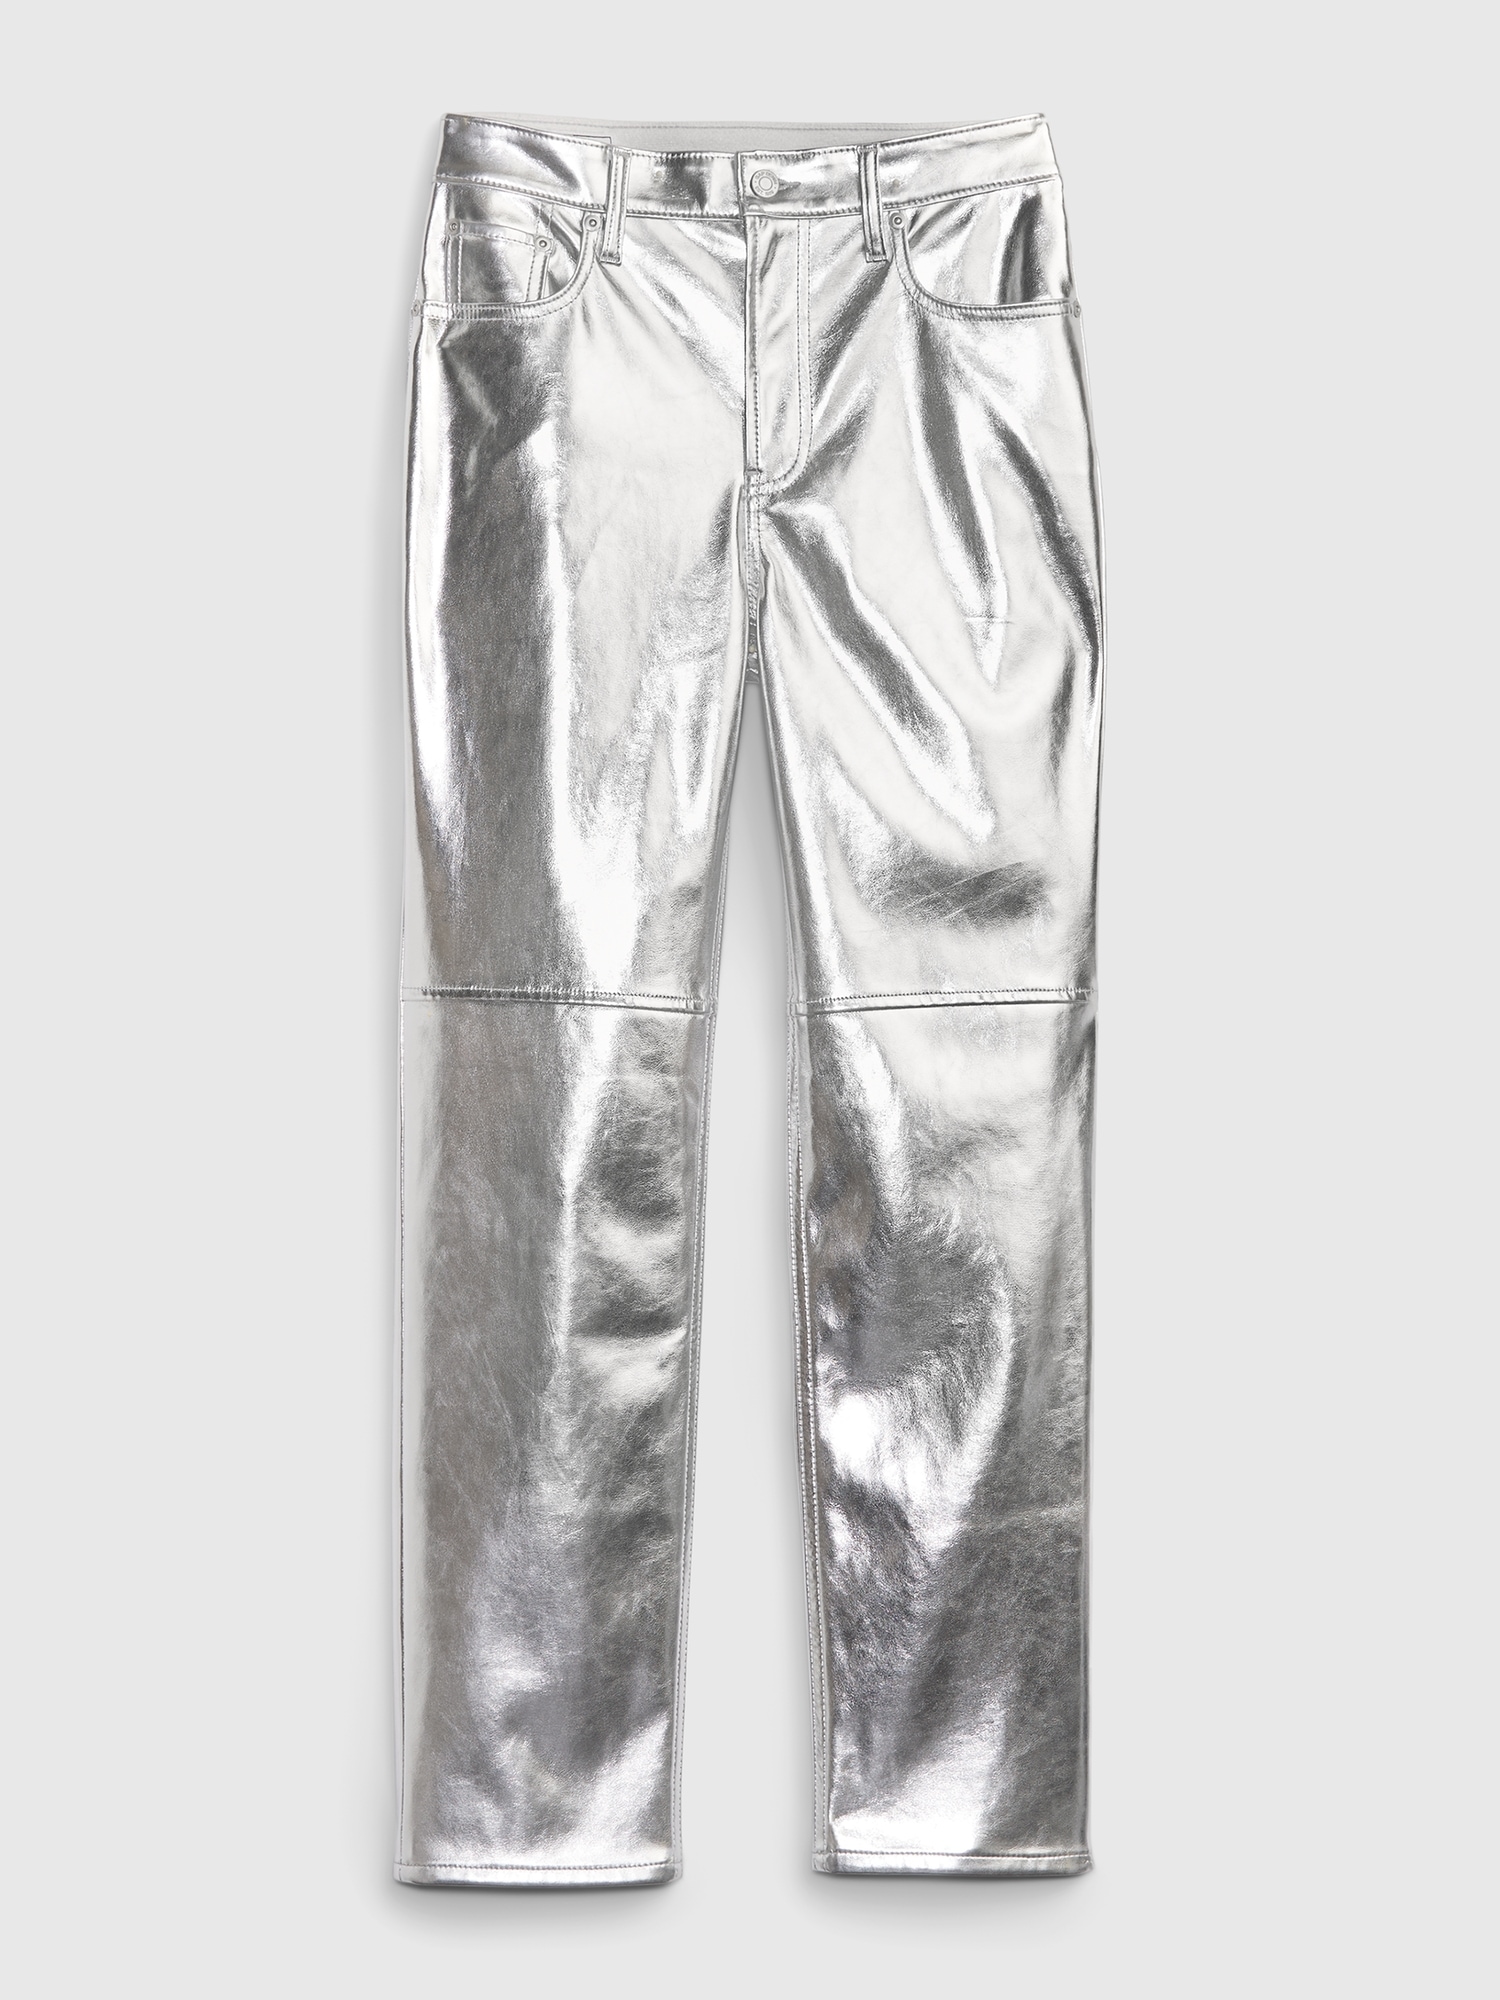 Bobbt Sheer Metallic Pants Silver